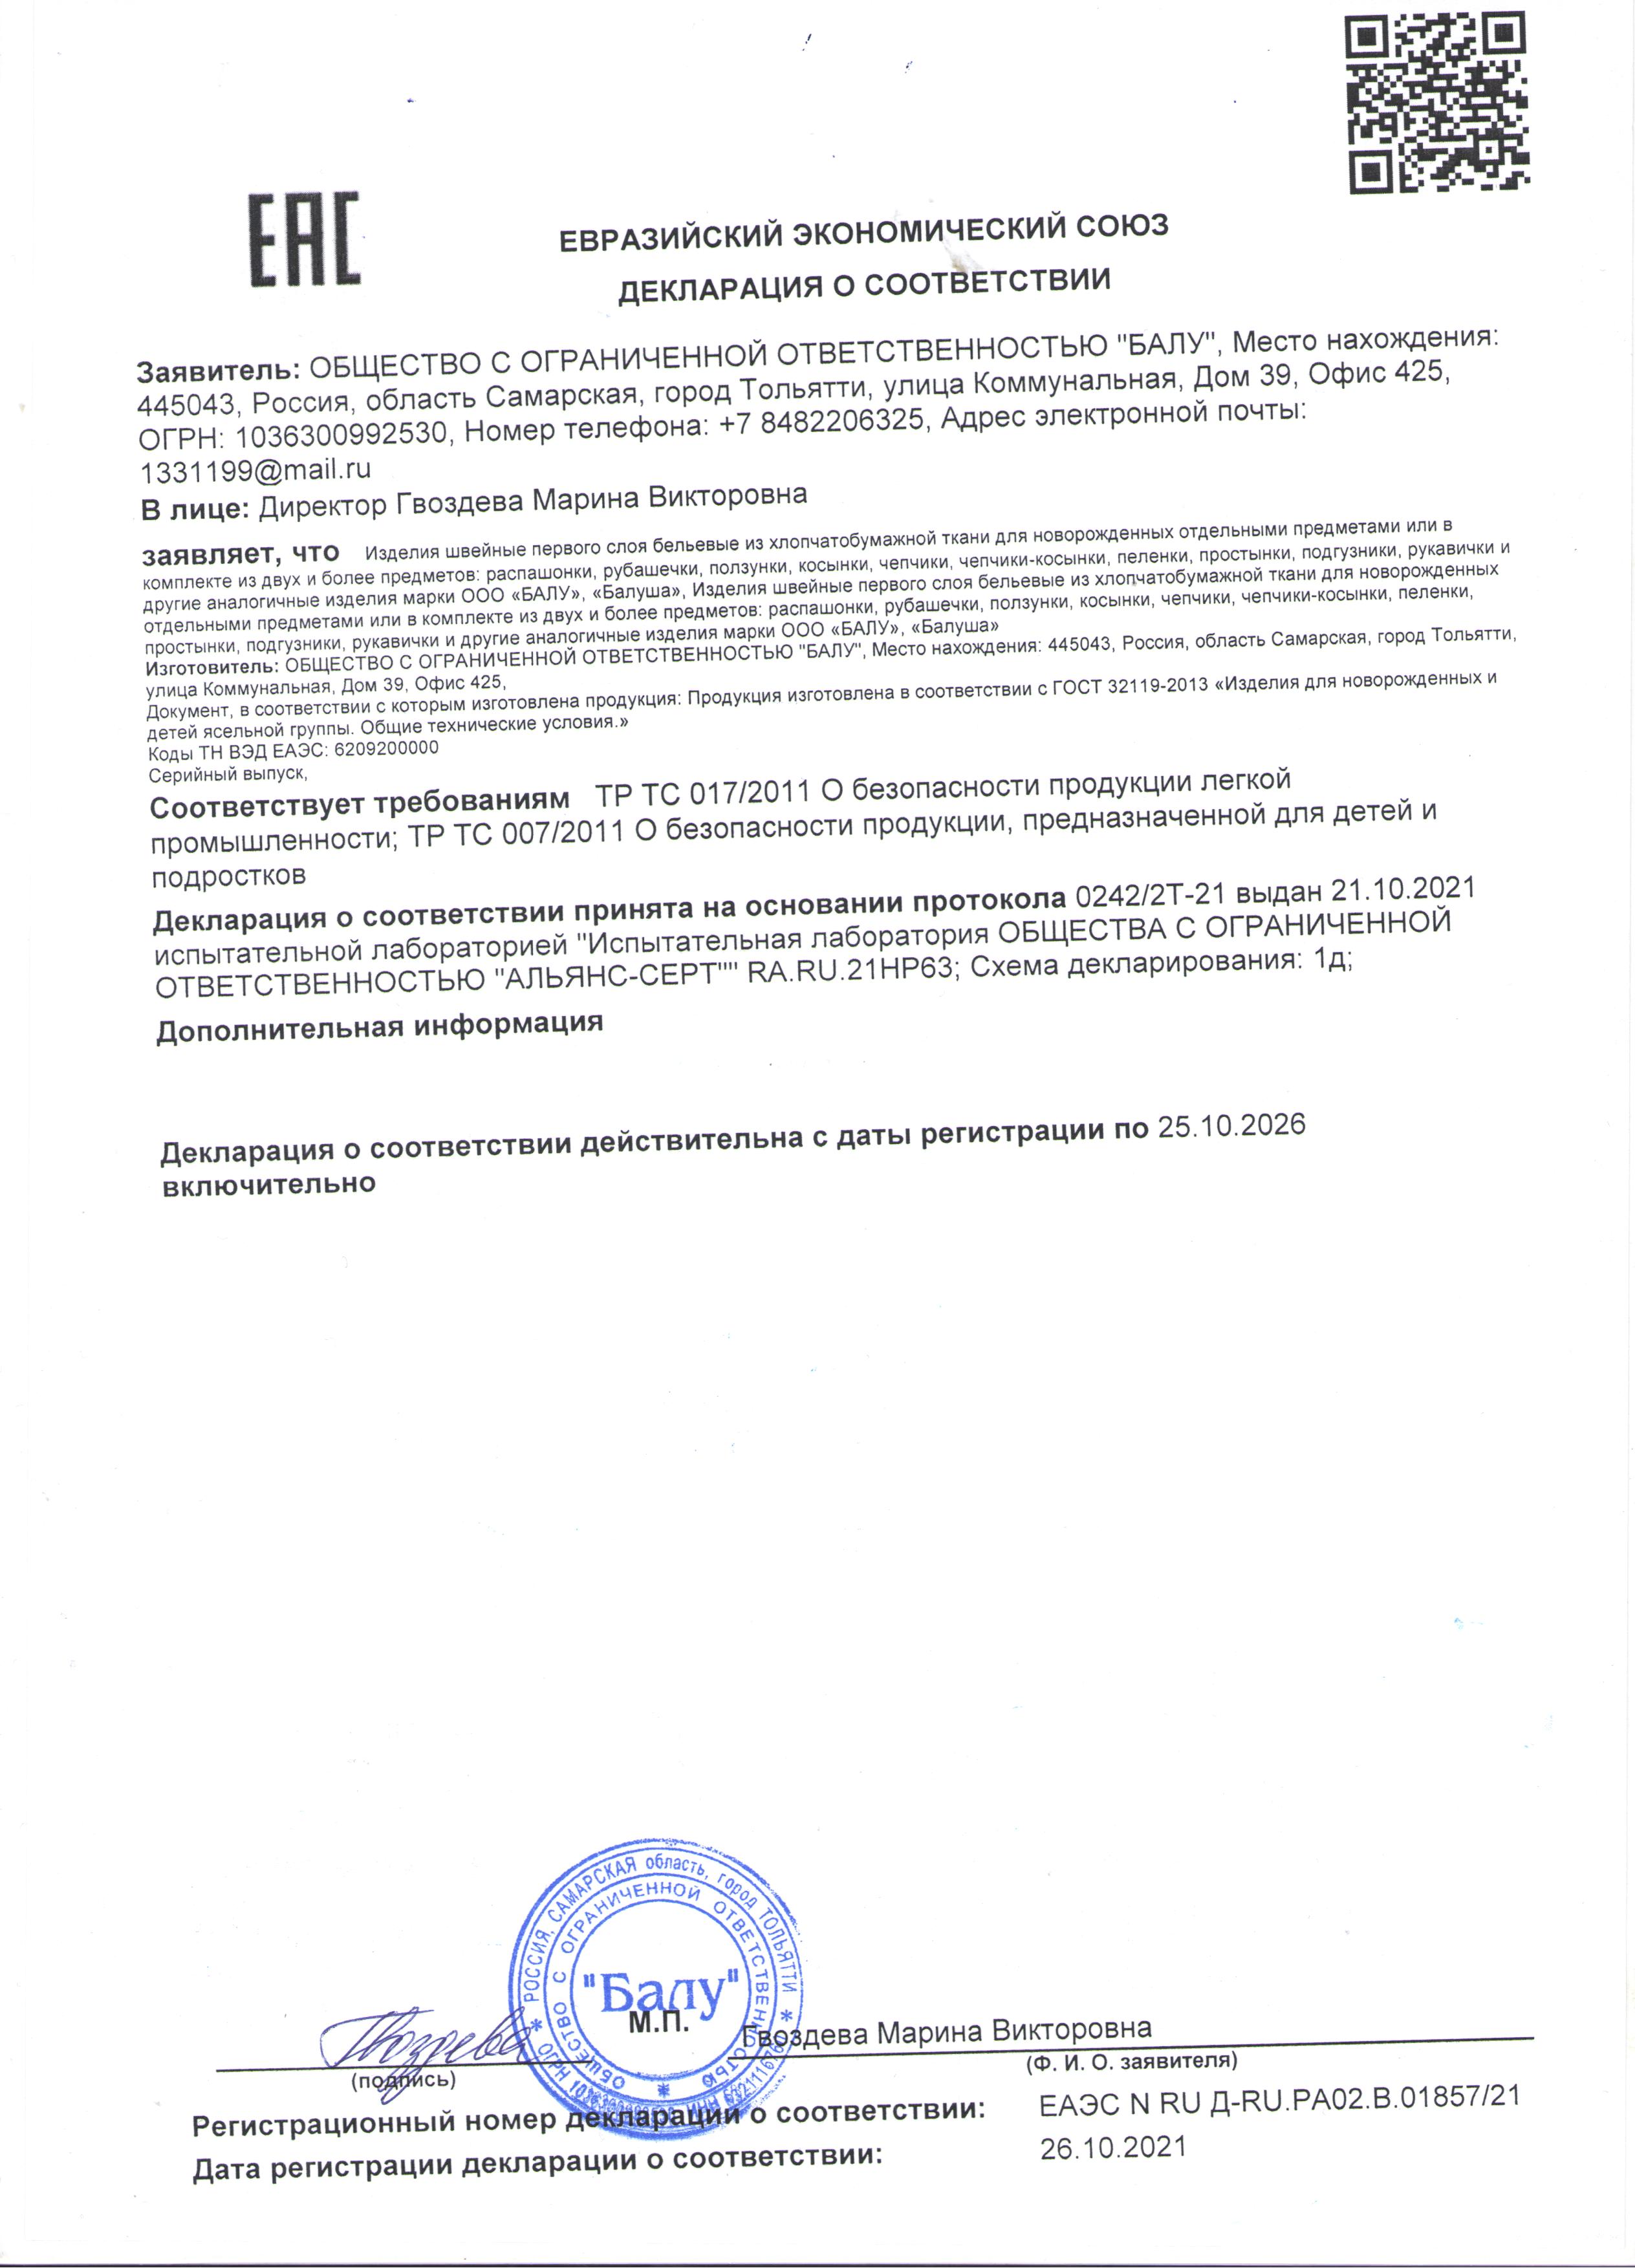 Декларация о соответсвии: Изделия хлопчатобумажные 1 слоя до 25.10.2026